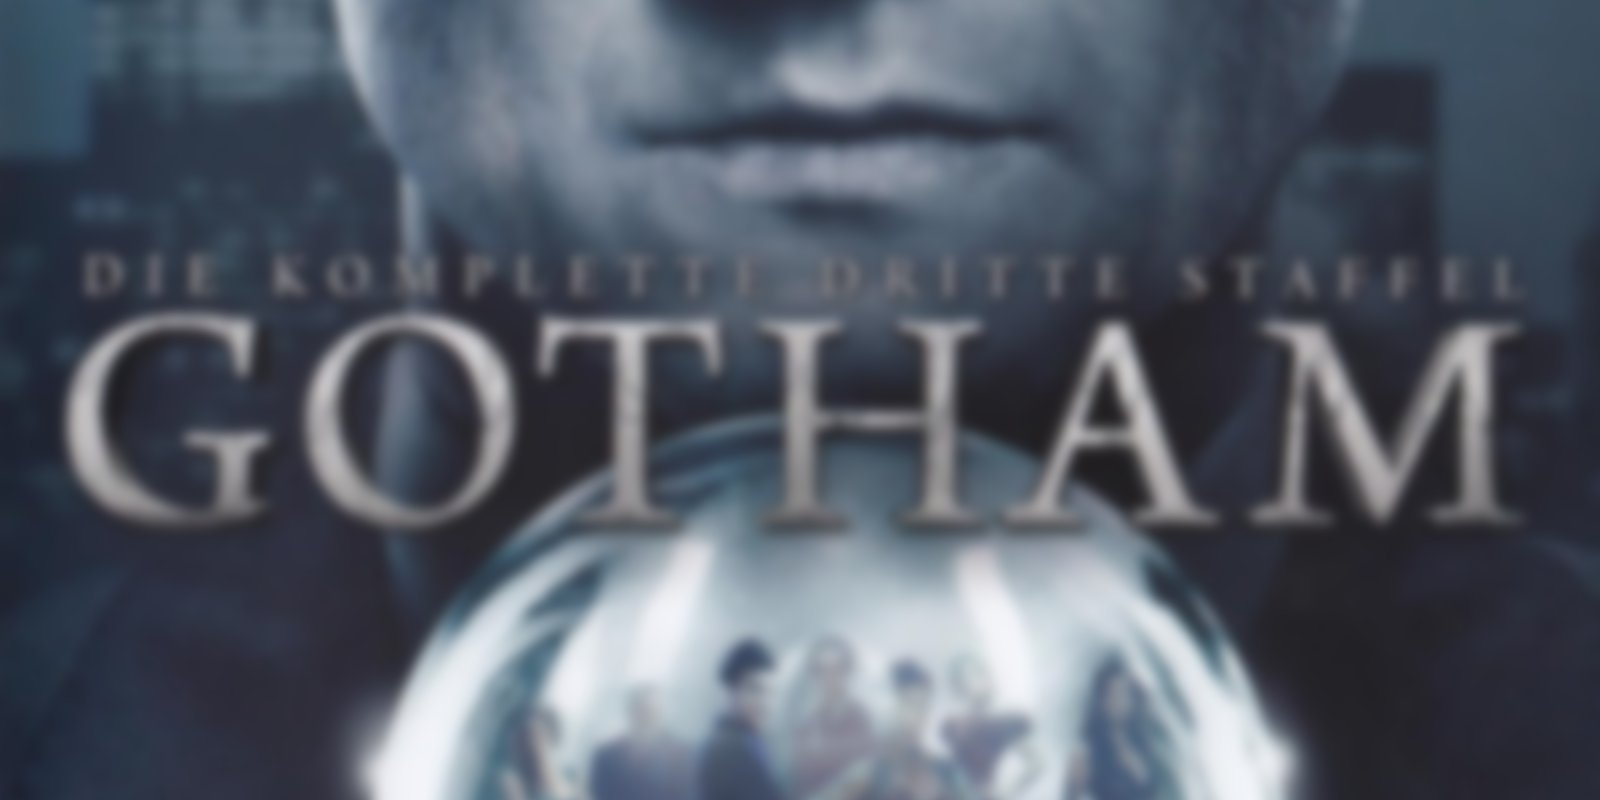 Gotham - Staffel 3